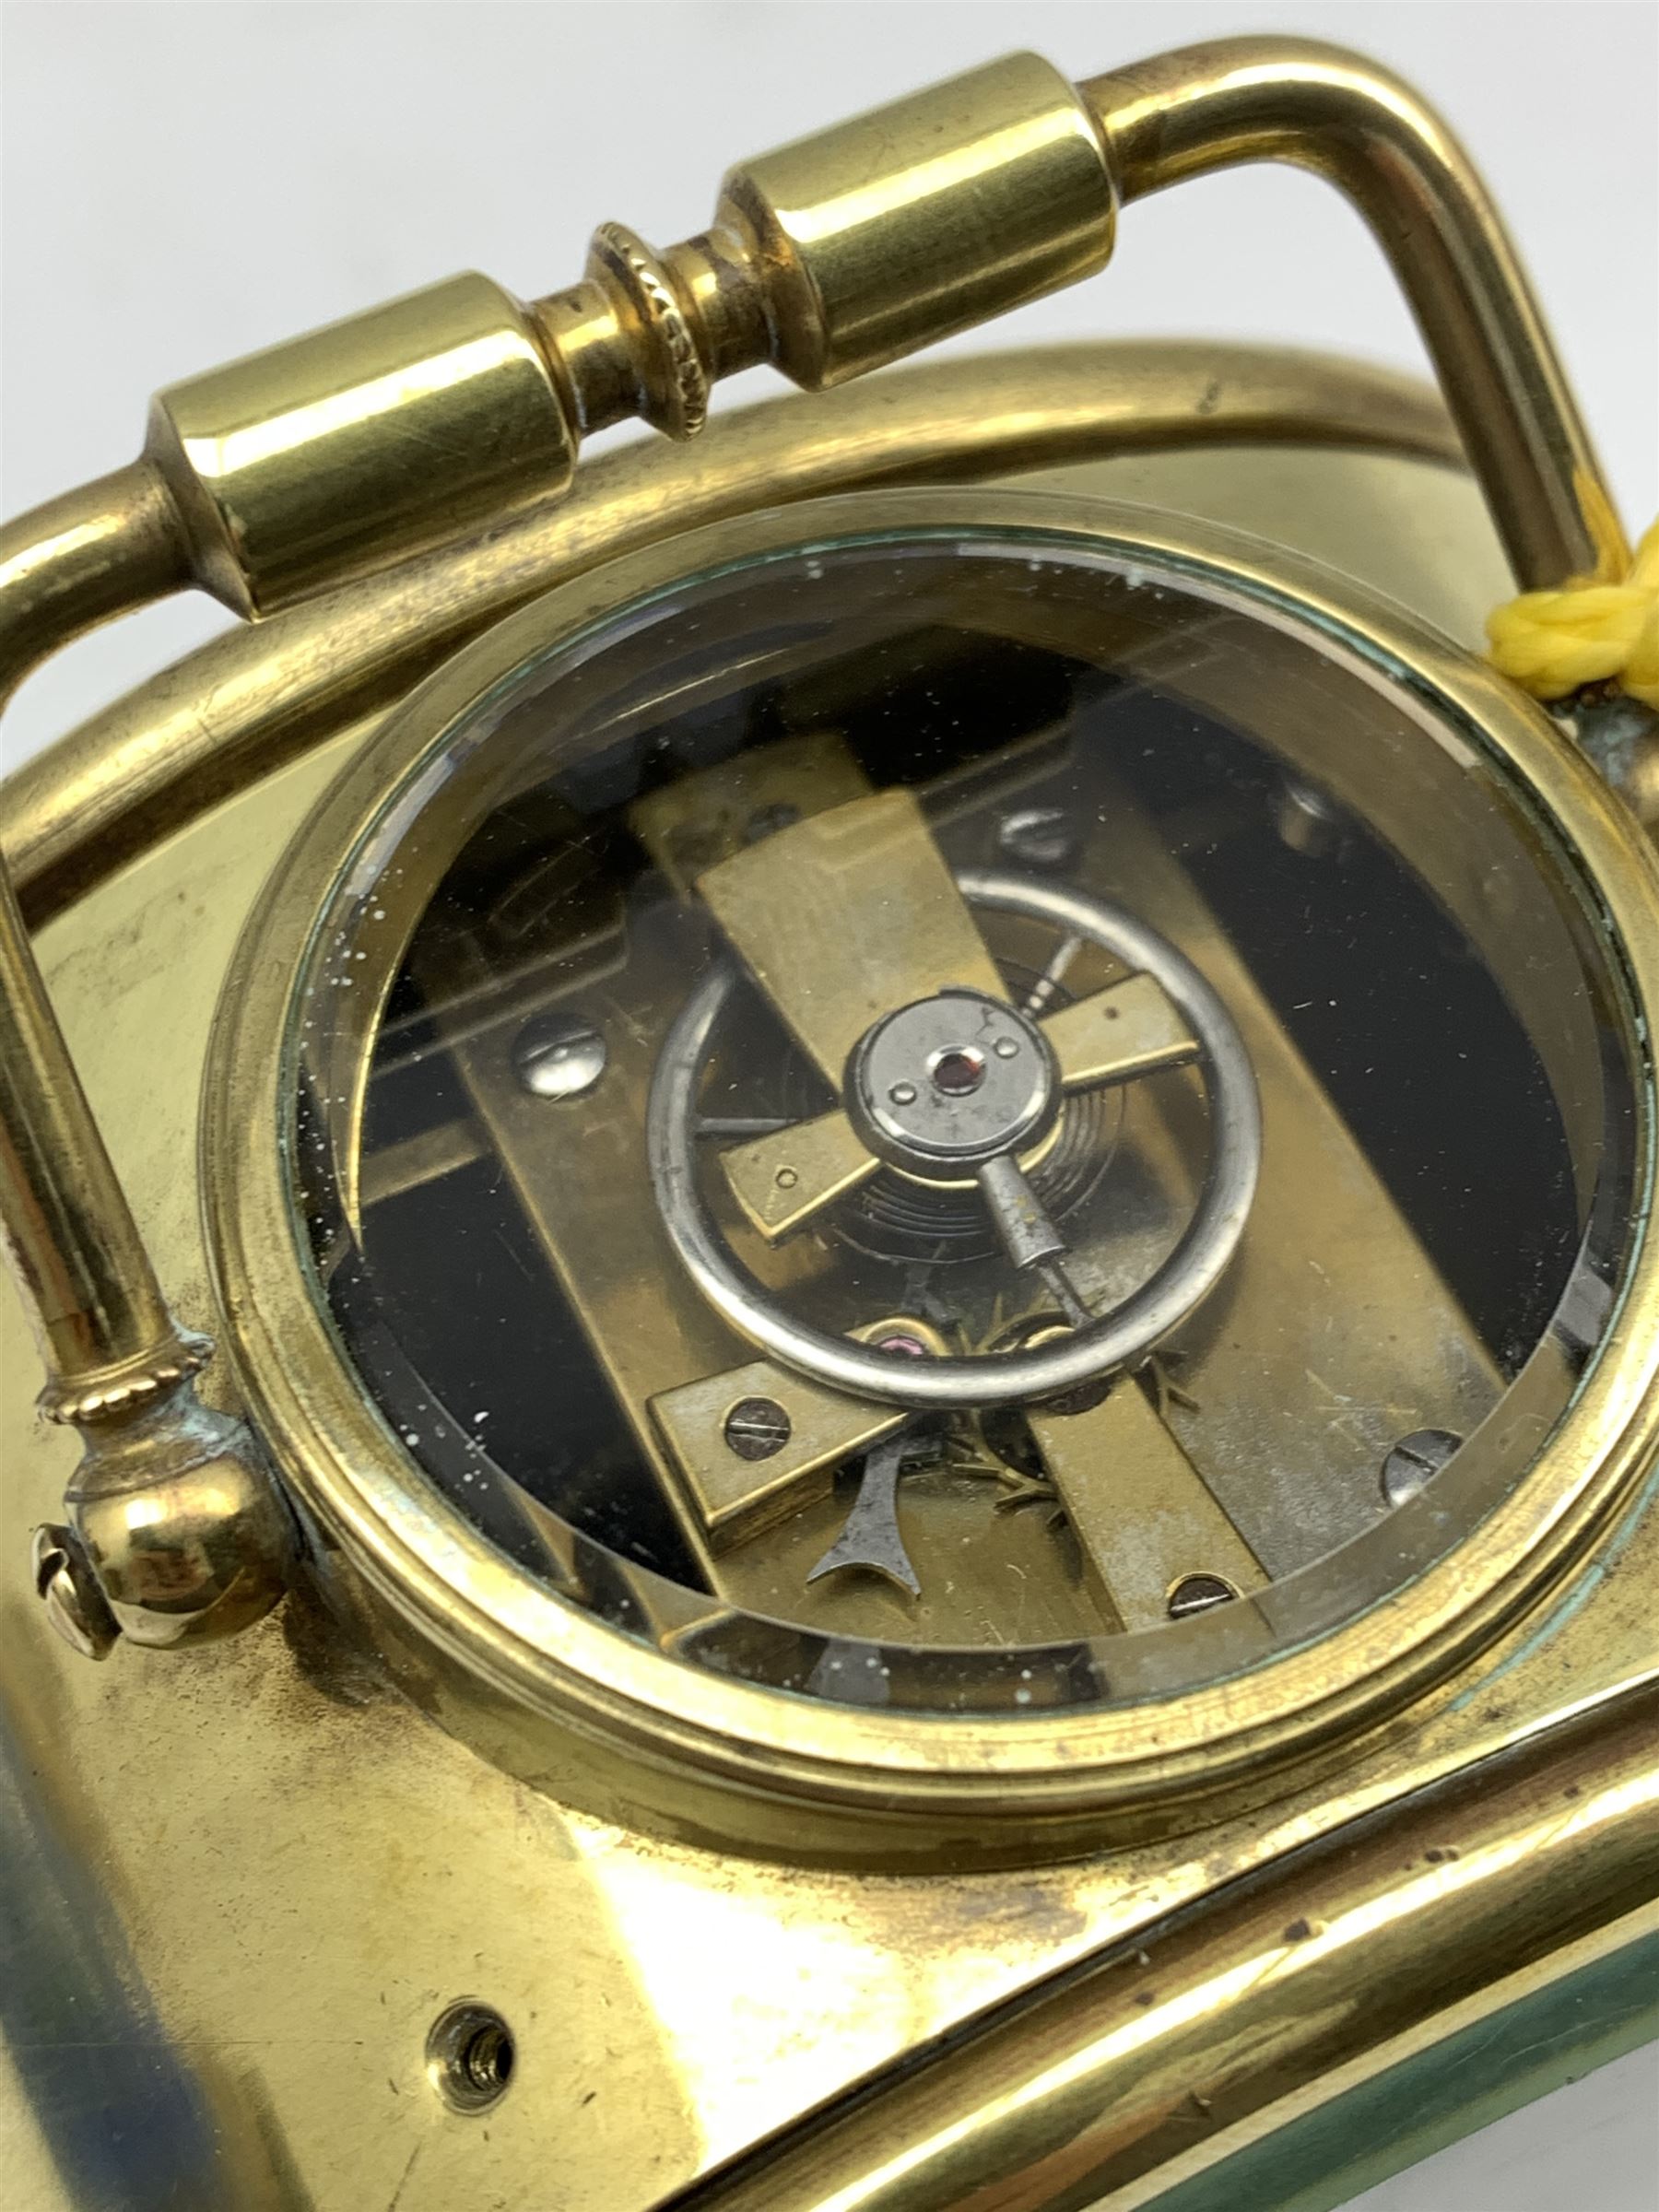 Brass cased drum type alarm clock - Image 3 of 3